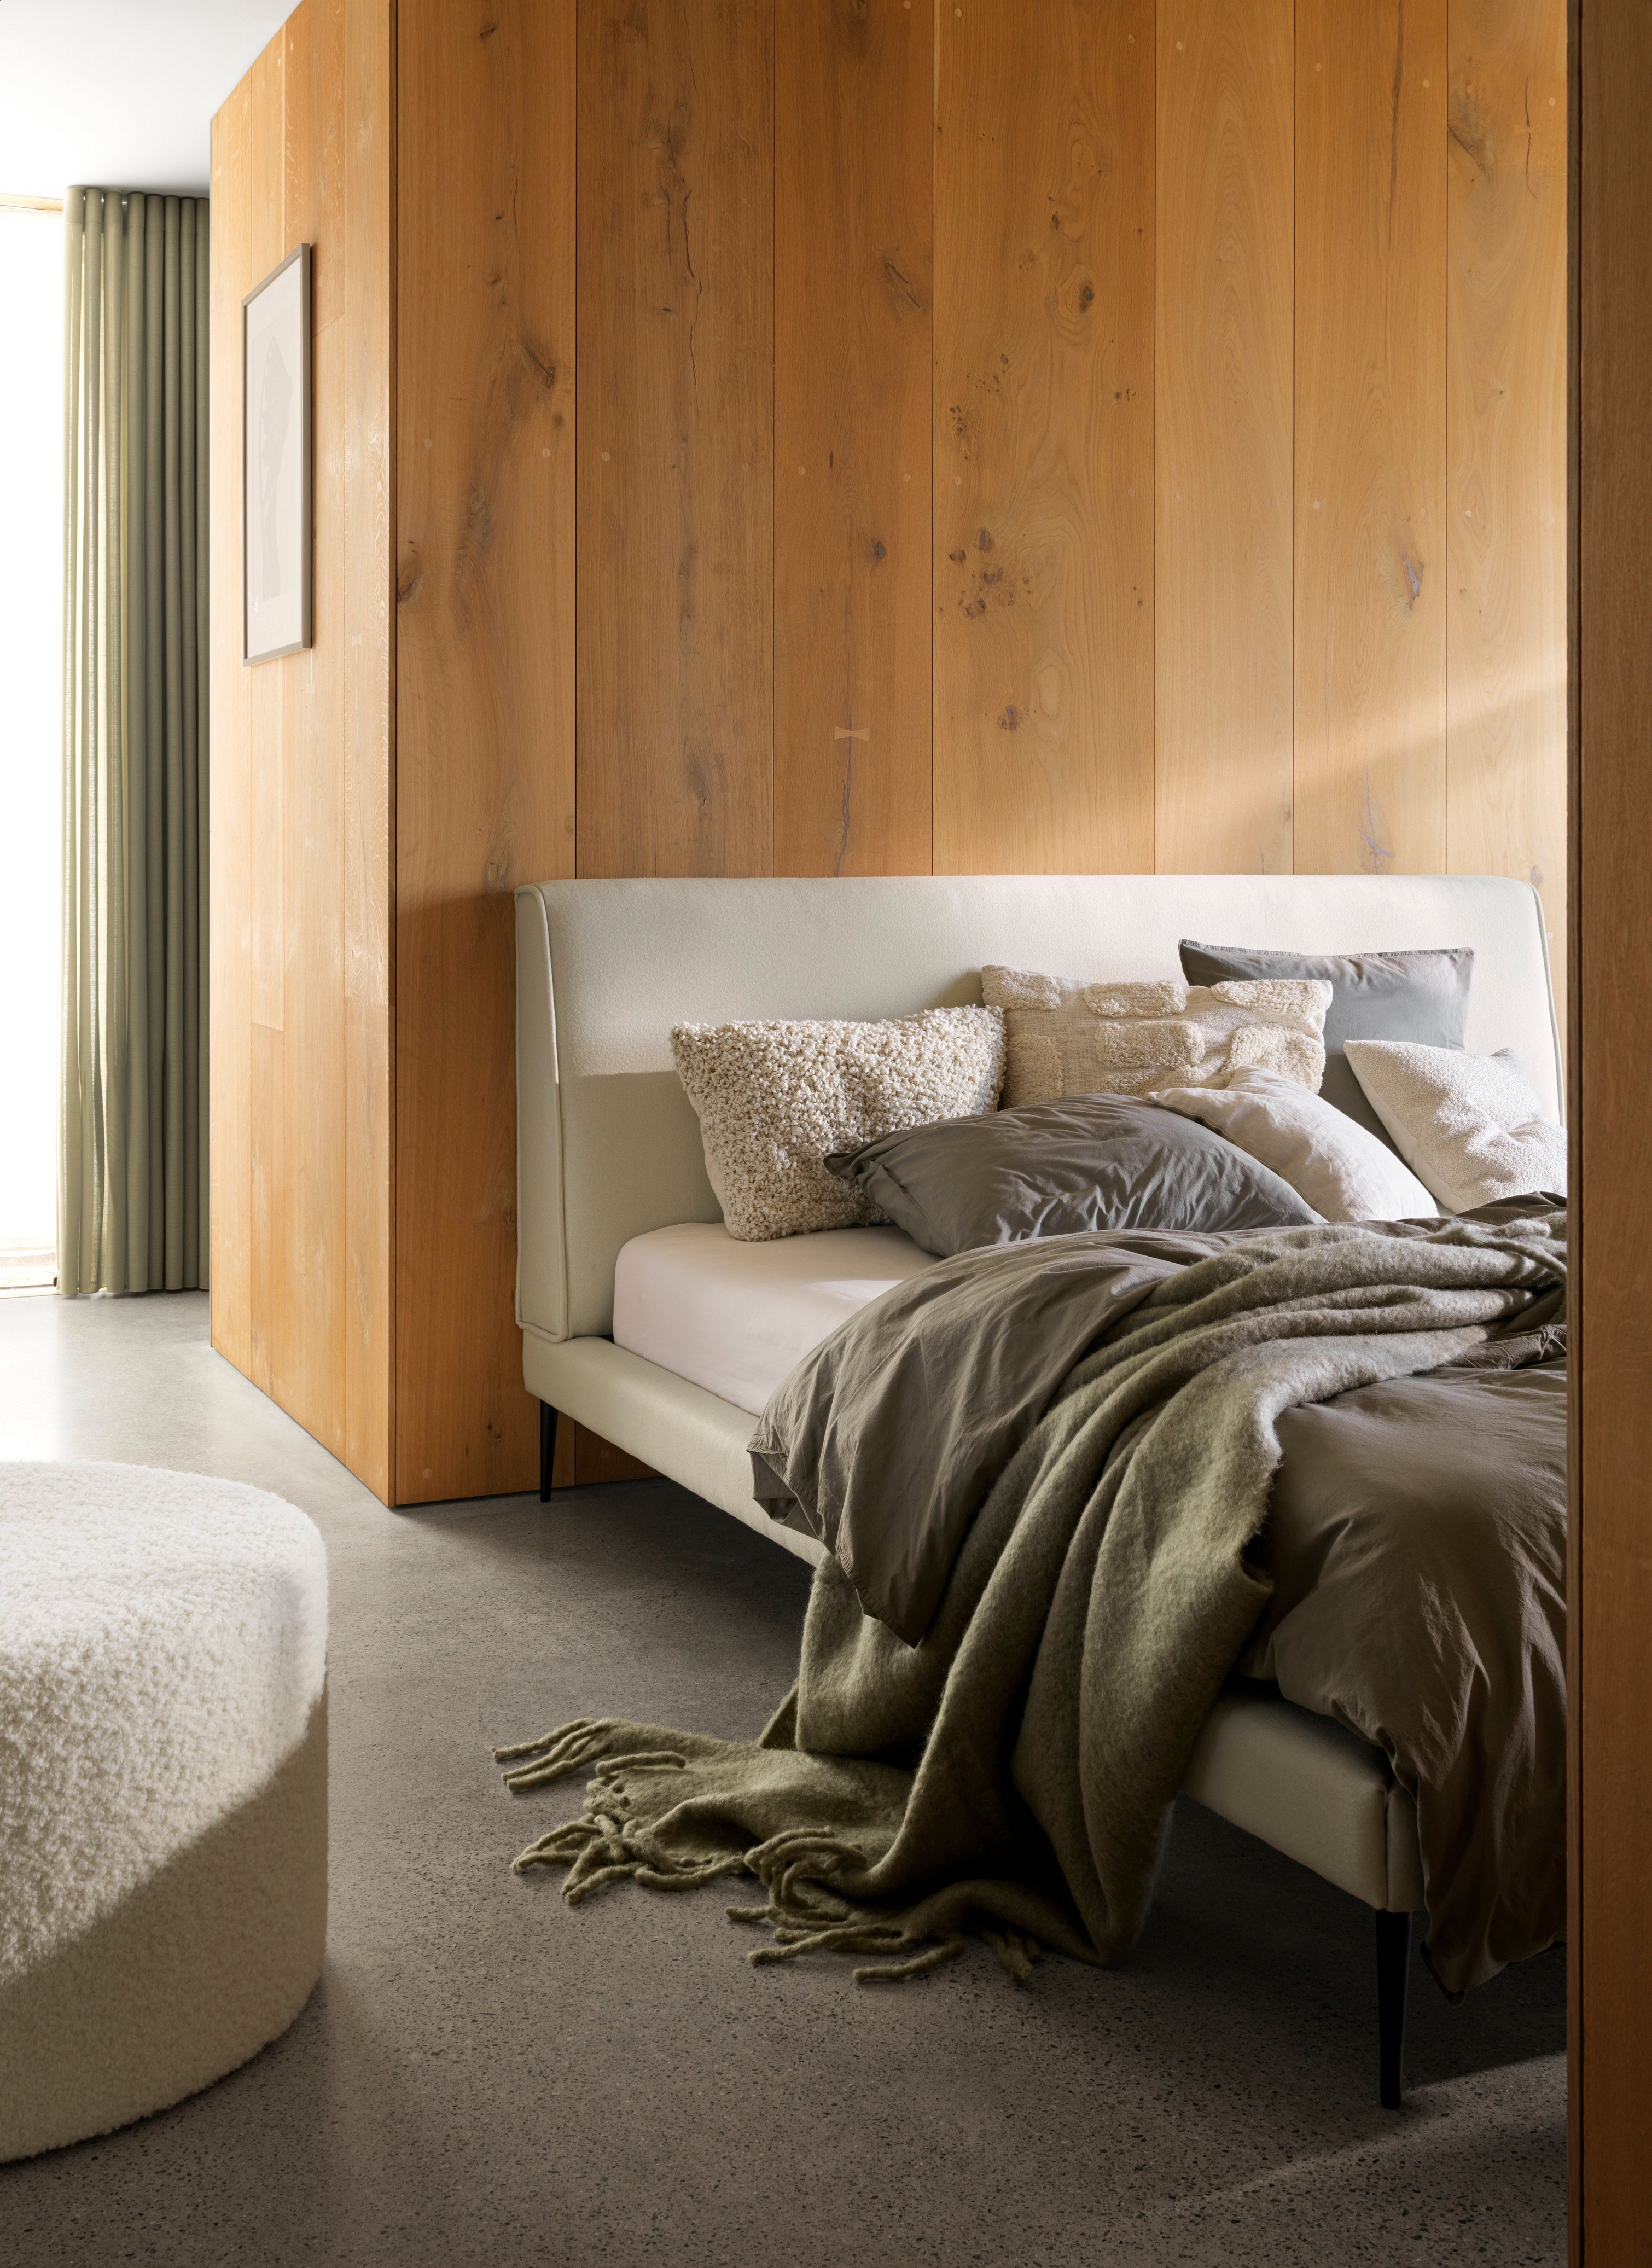 Kényelmes ágy plüss plédekkel és párnákkal fa felületű fal előtt, lágy megvilágítással.